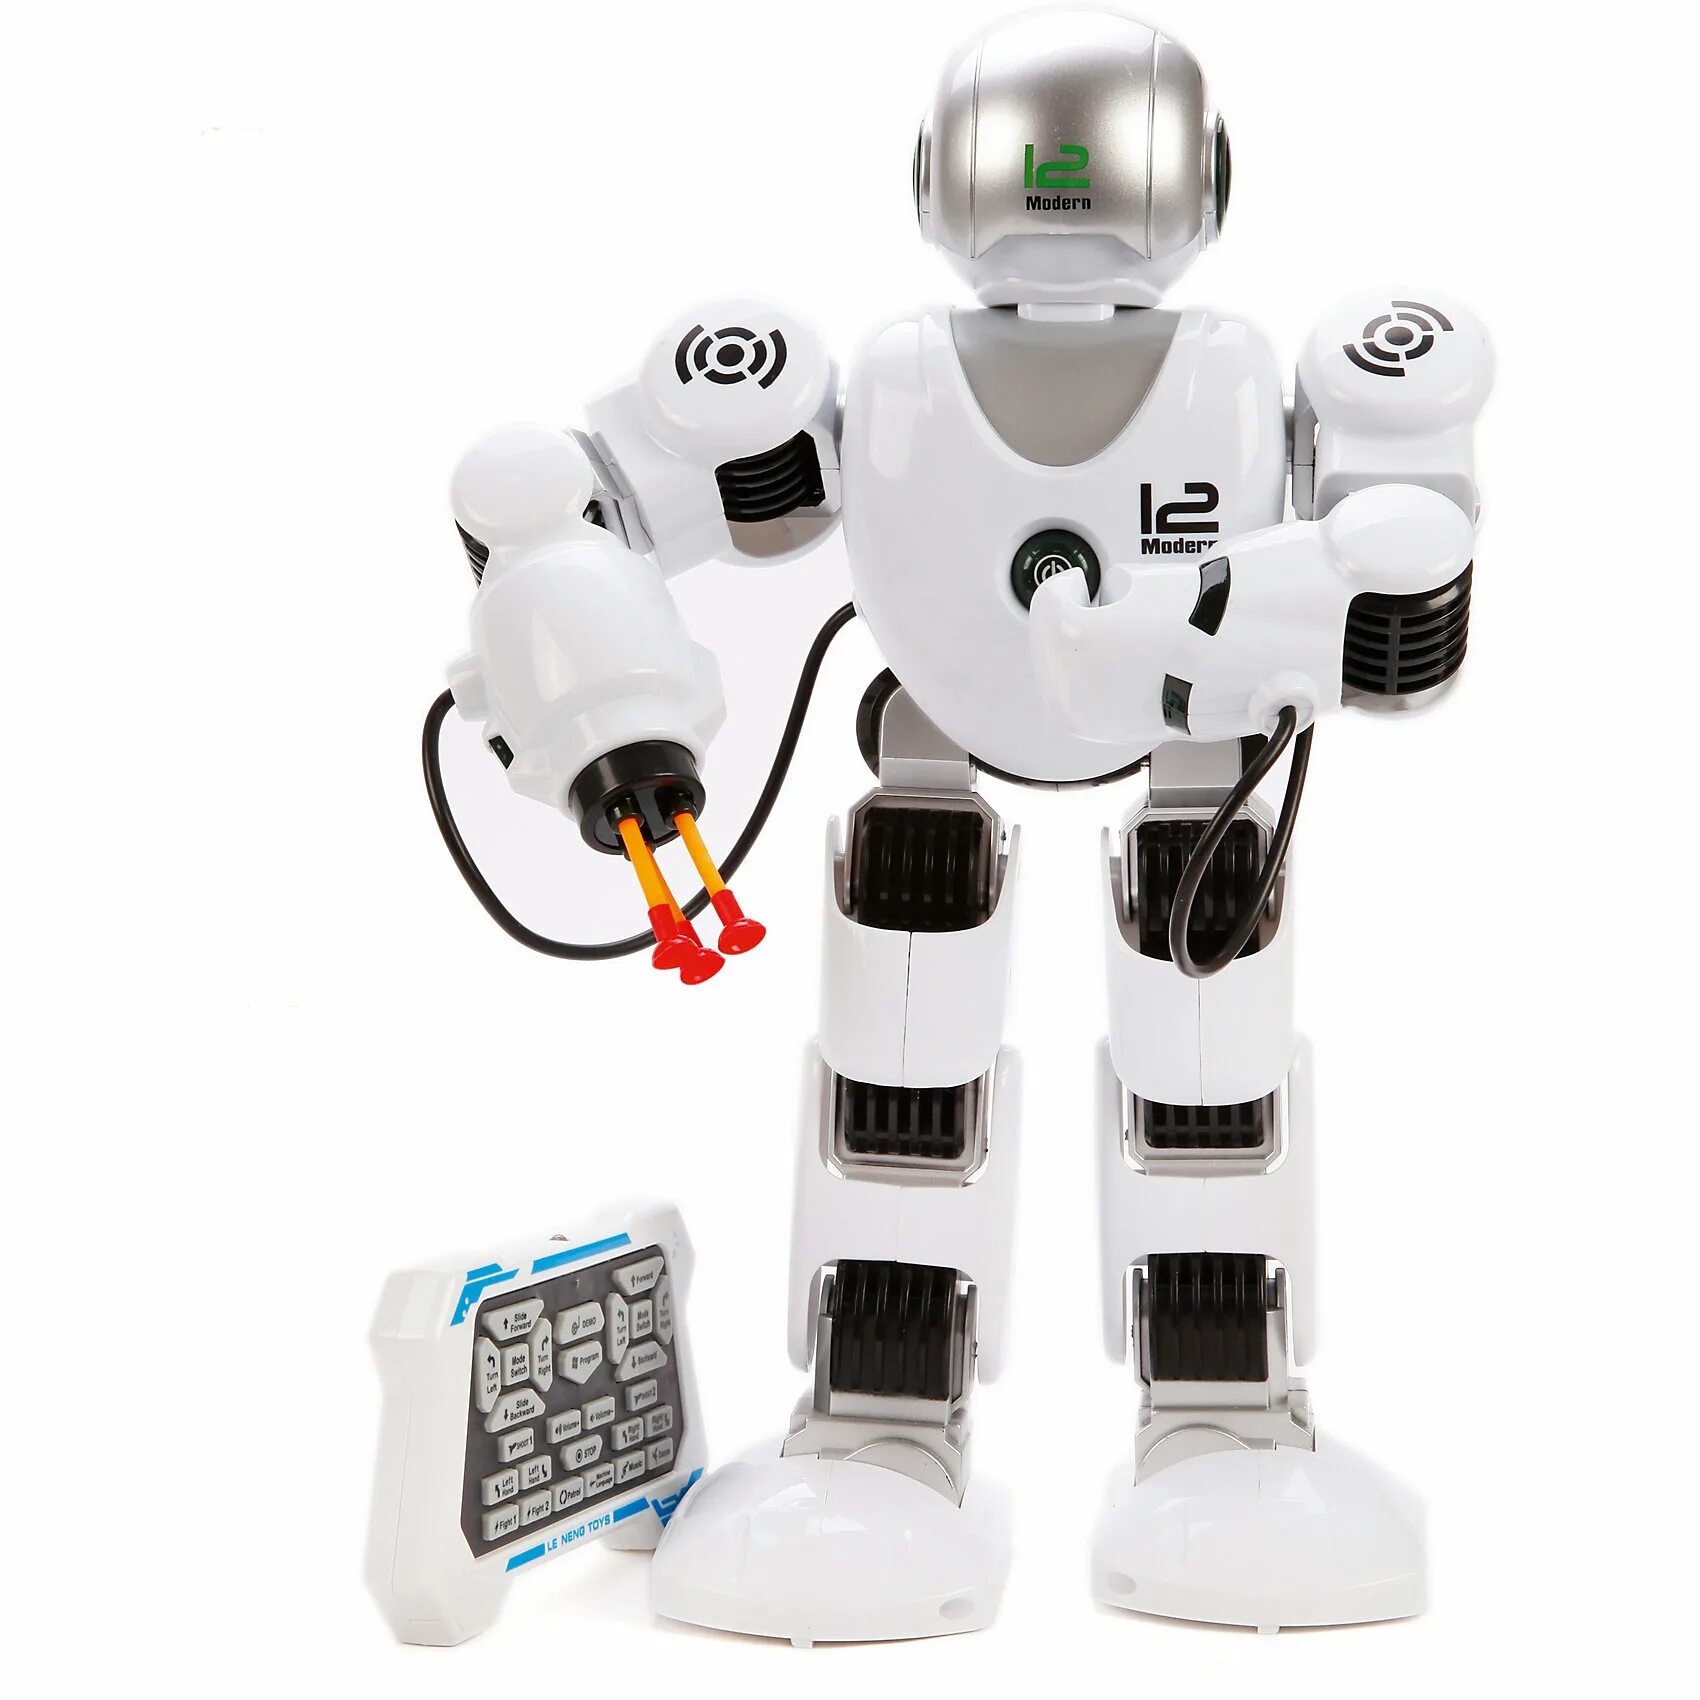 Купить робота на пульте. Робот игрушка a6215. Робот 26921 свет звук. Робот на пульте управления 2009245. Робот, ИК управление, 802927 наша игрушка.